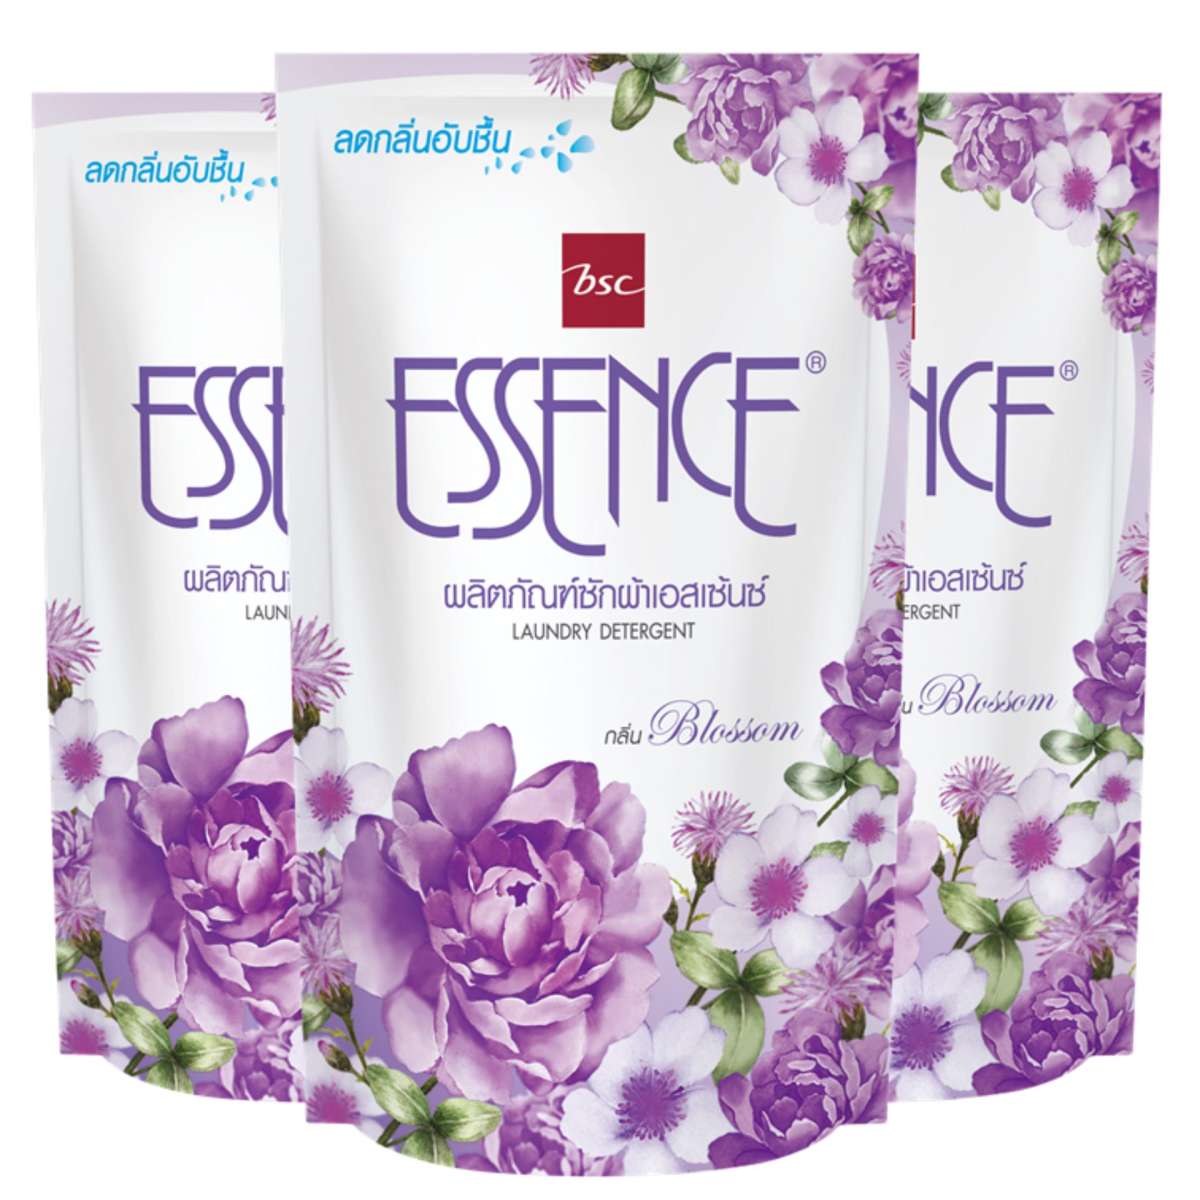 Essence น้ำยาซักผ้า เอสเซ้นซ์ กลิ่น Blossom ( สีม่วง ) ชนิดเติม 400 มล. แพ็ค 3 ถุง